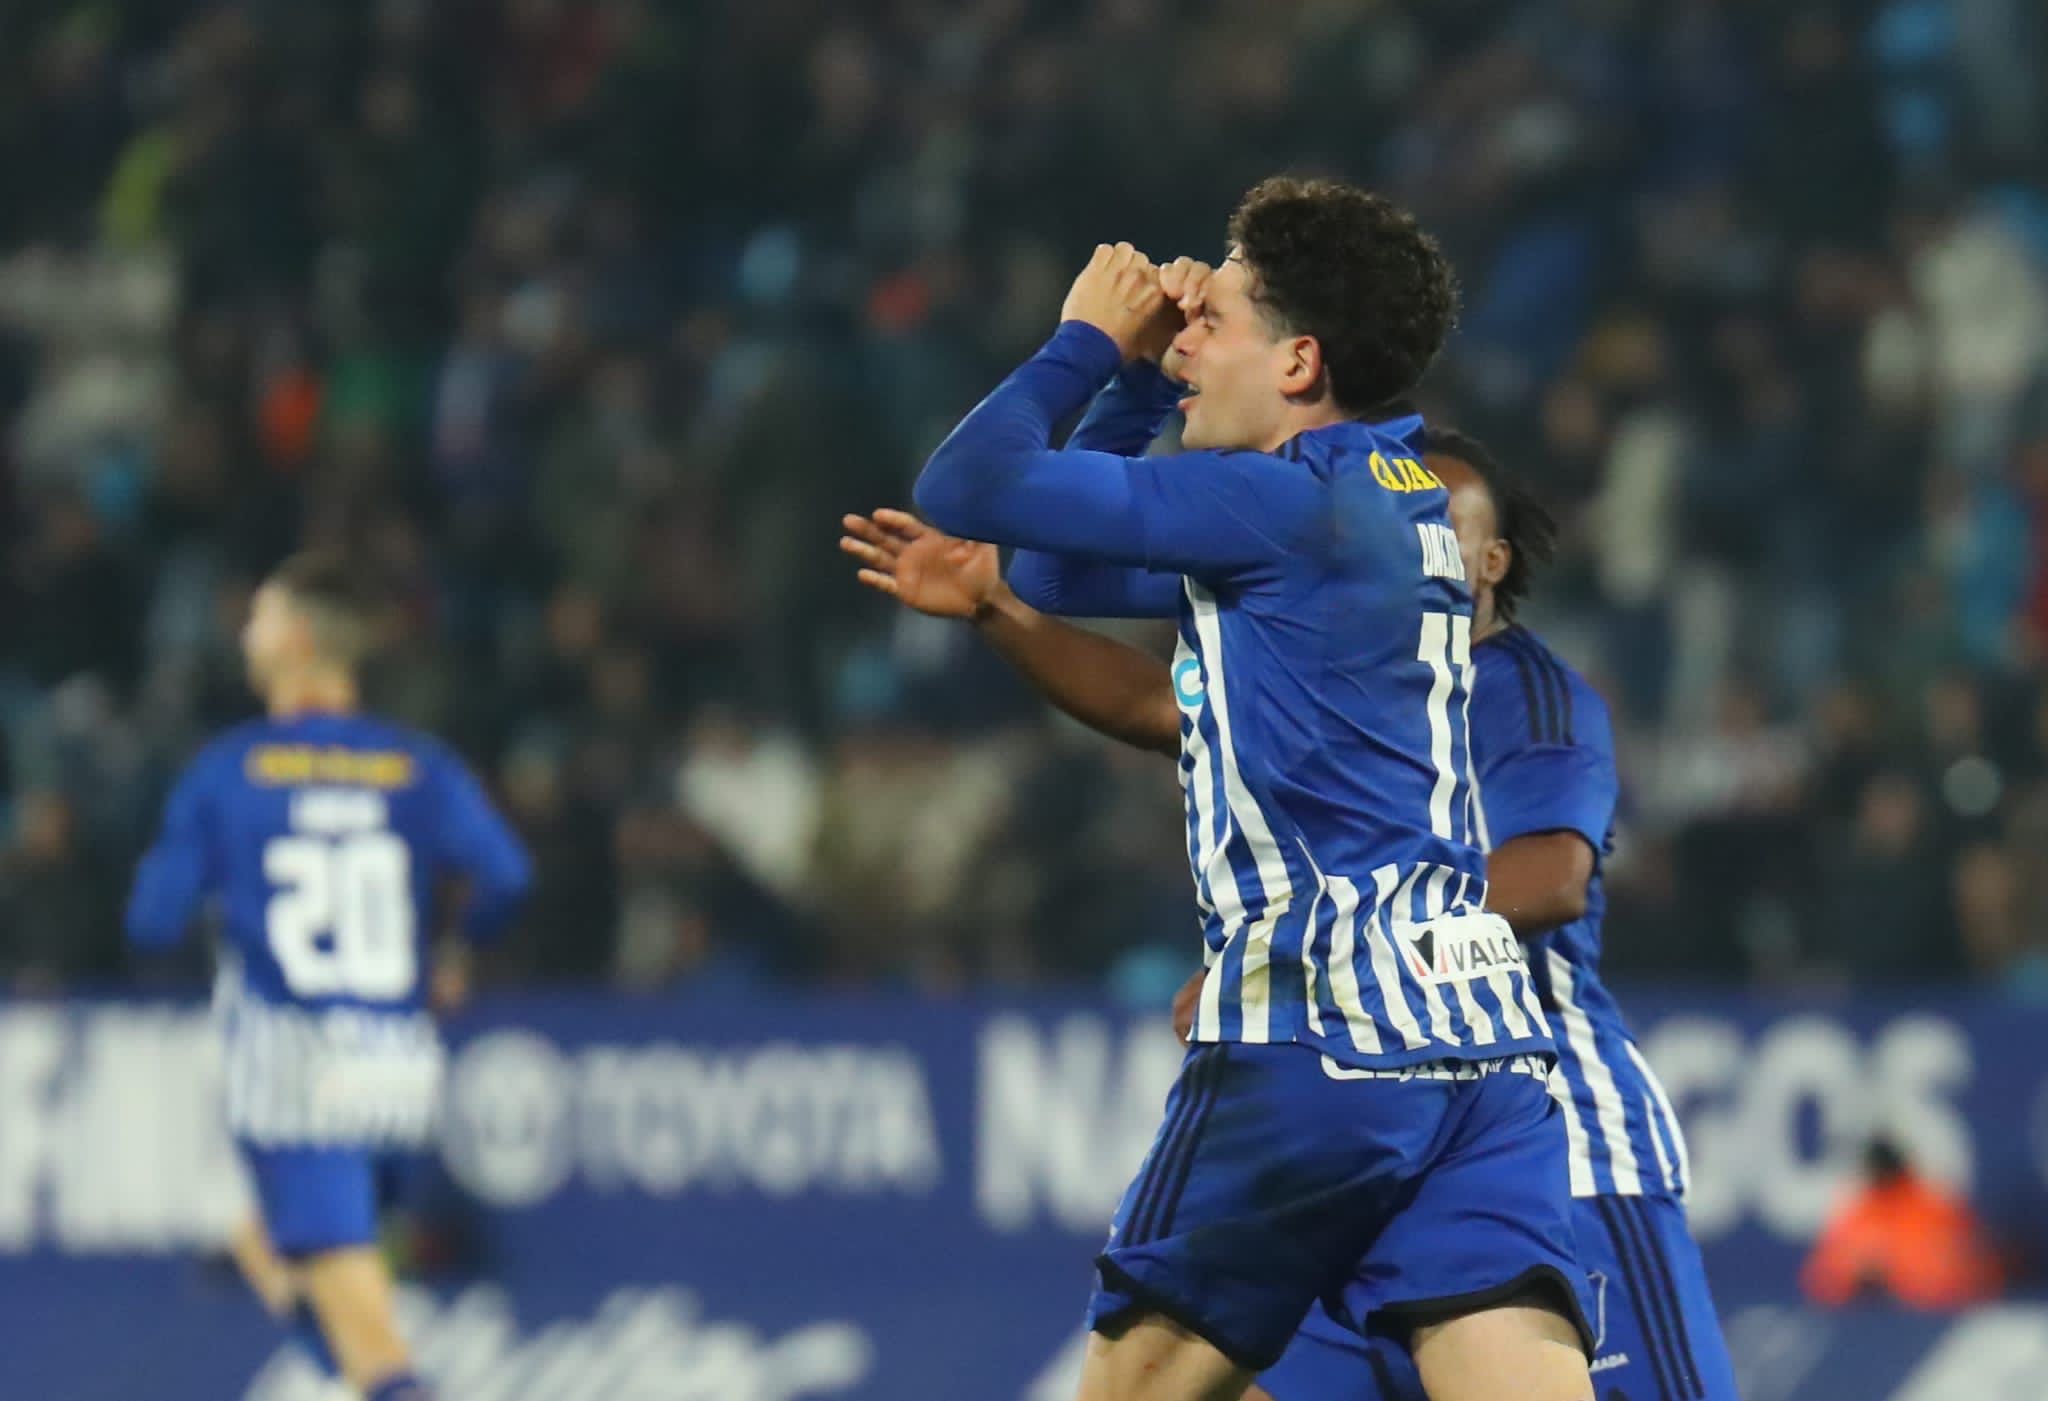 Dacosta celebrando el gol contra el Sestao en El Toralín. | SDP